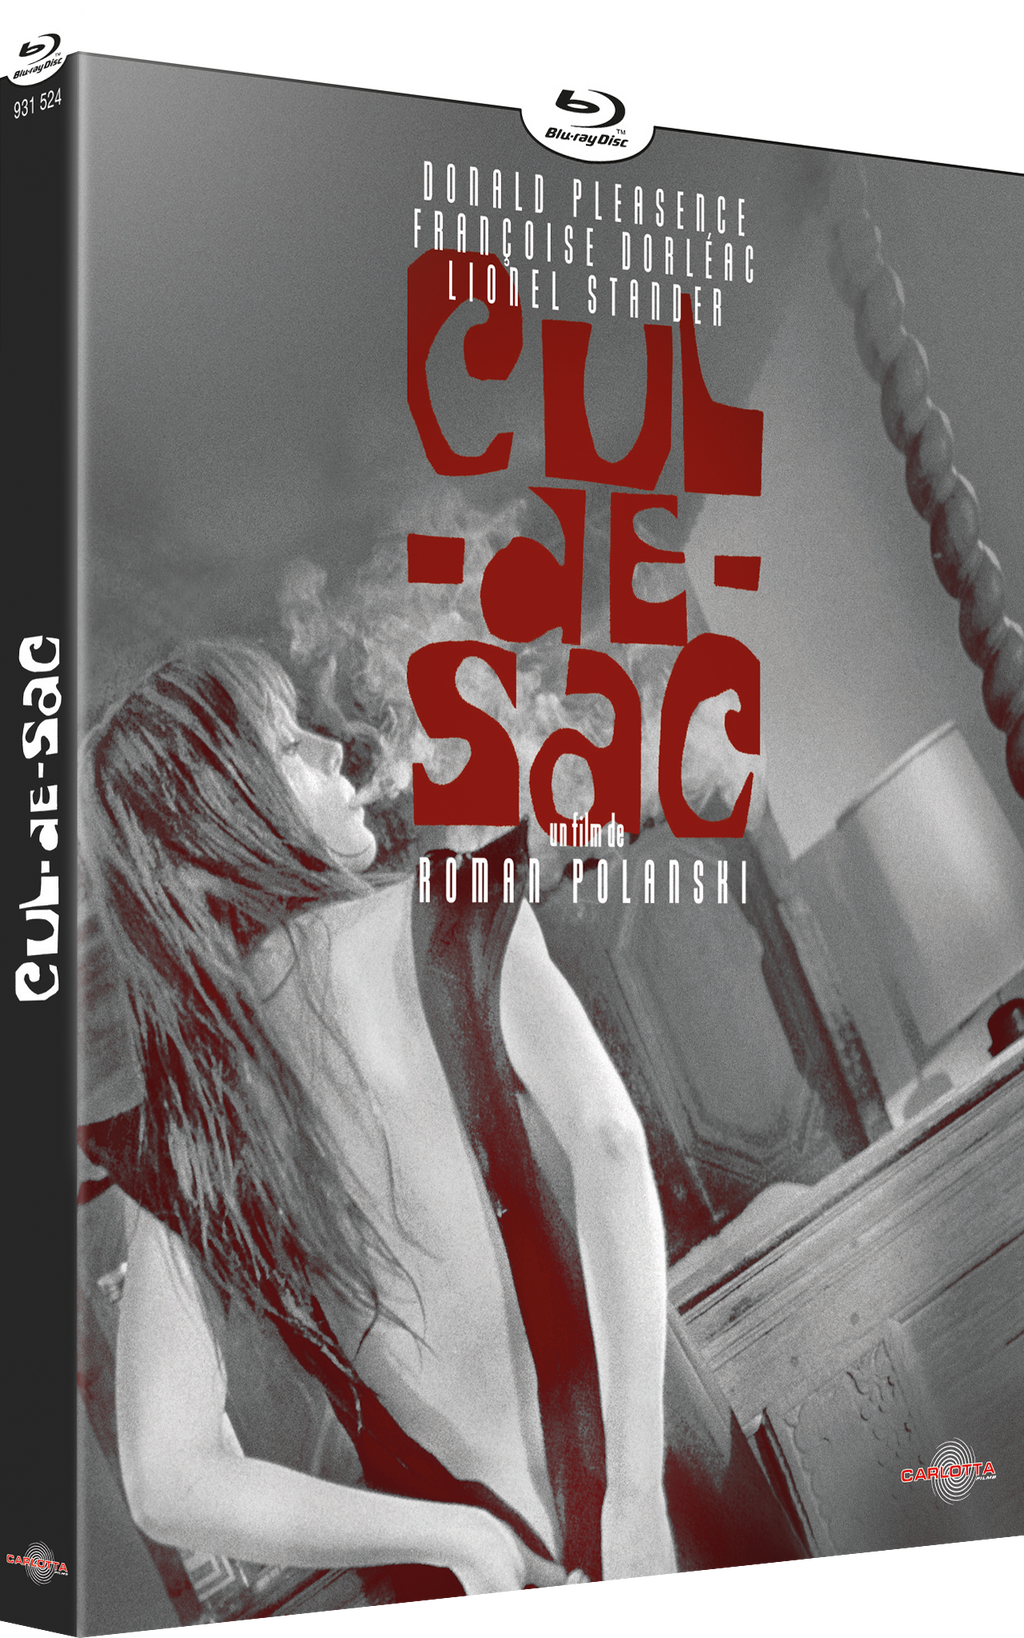 Cul-de-sac by Roman Polanski